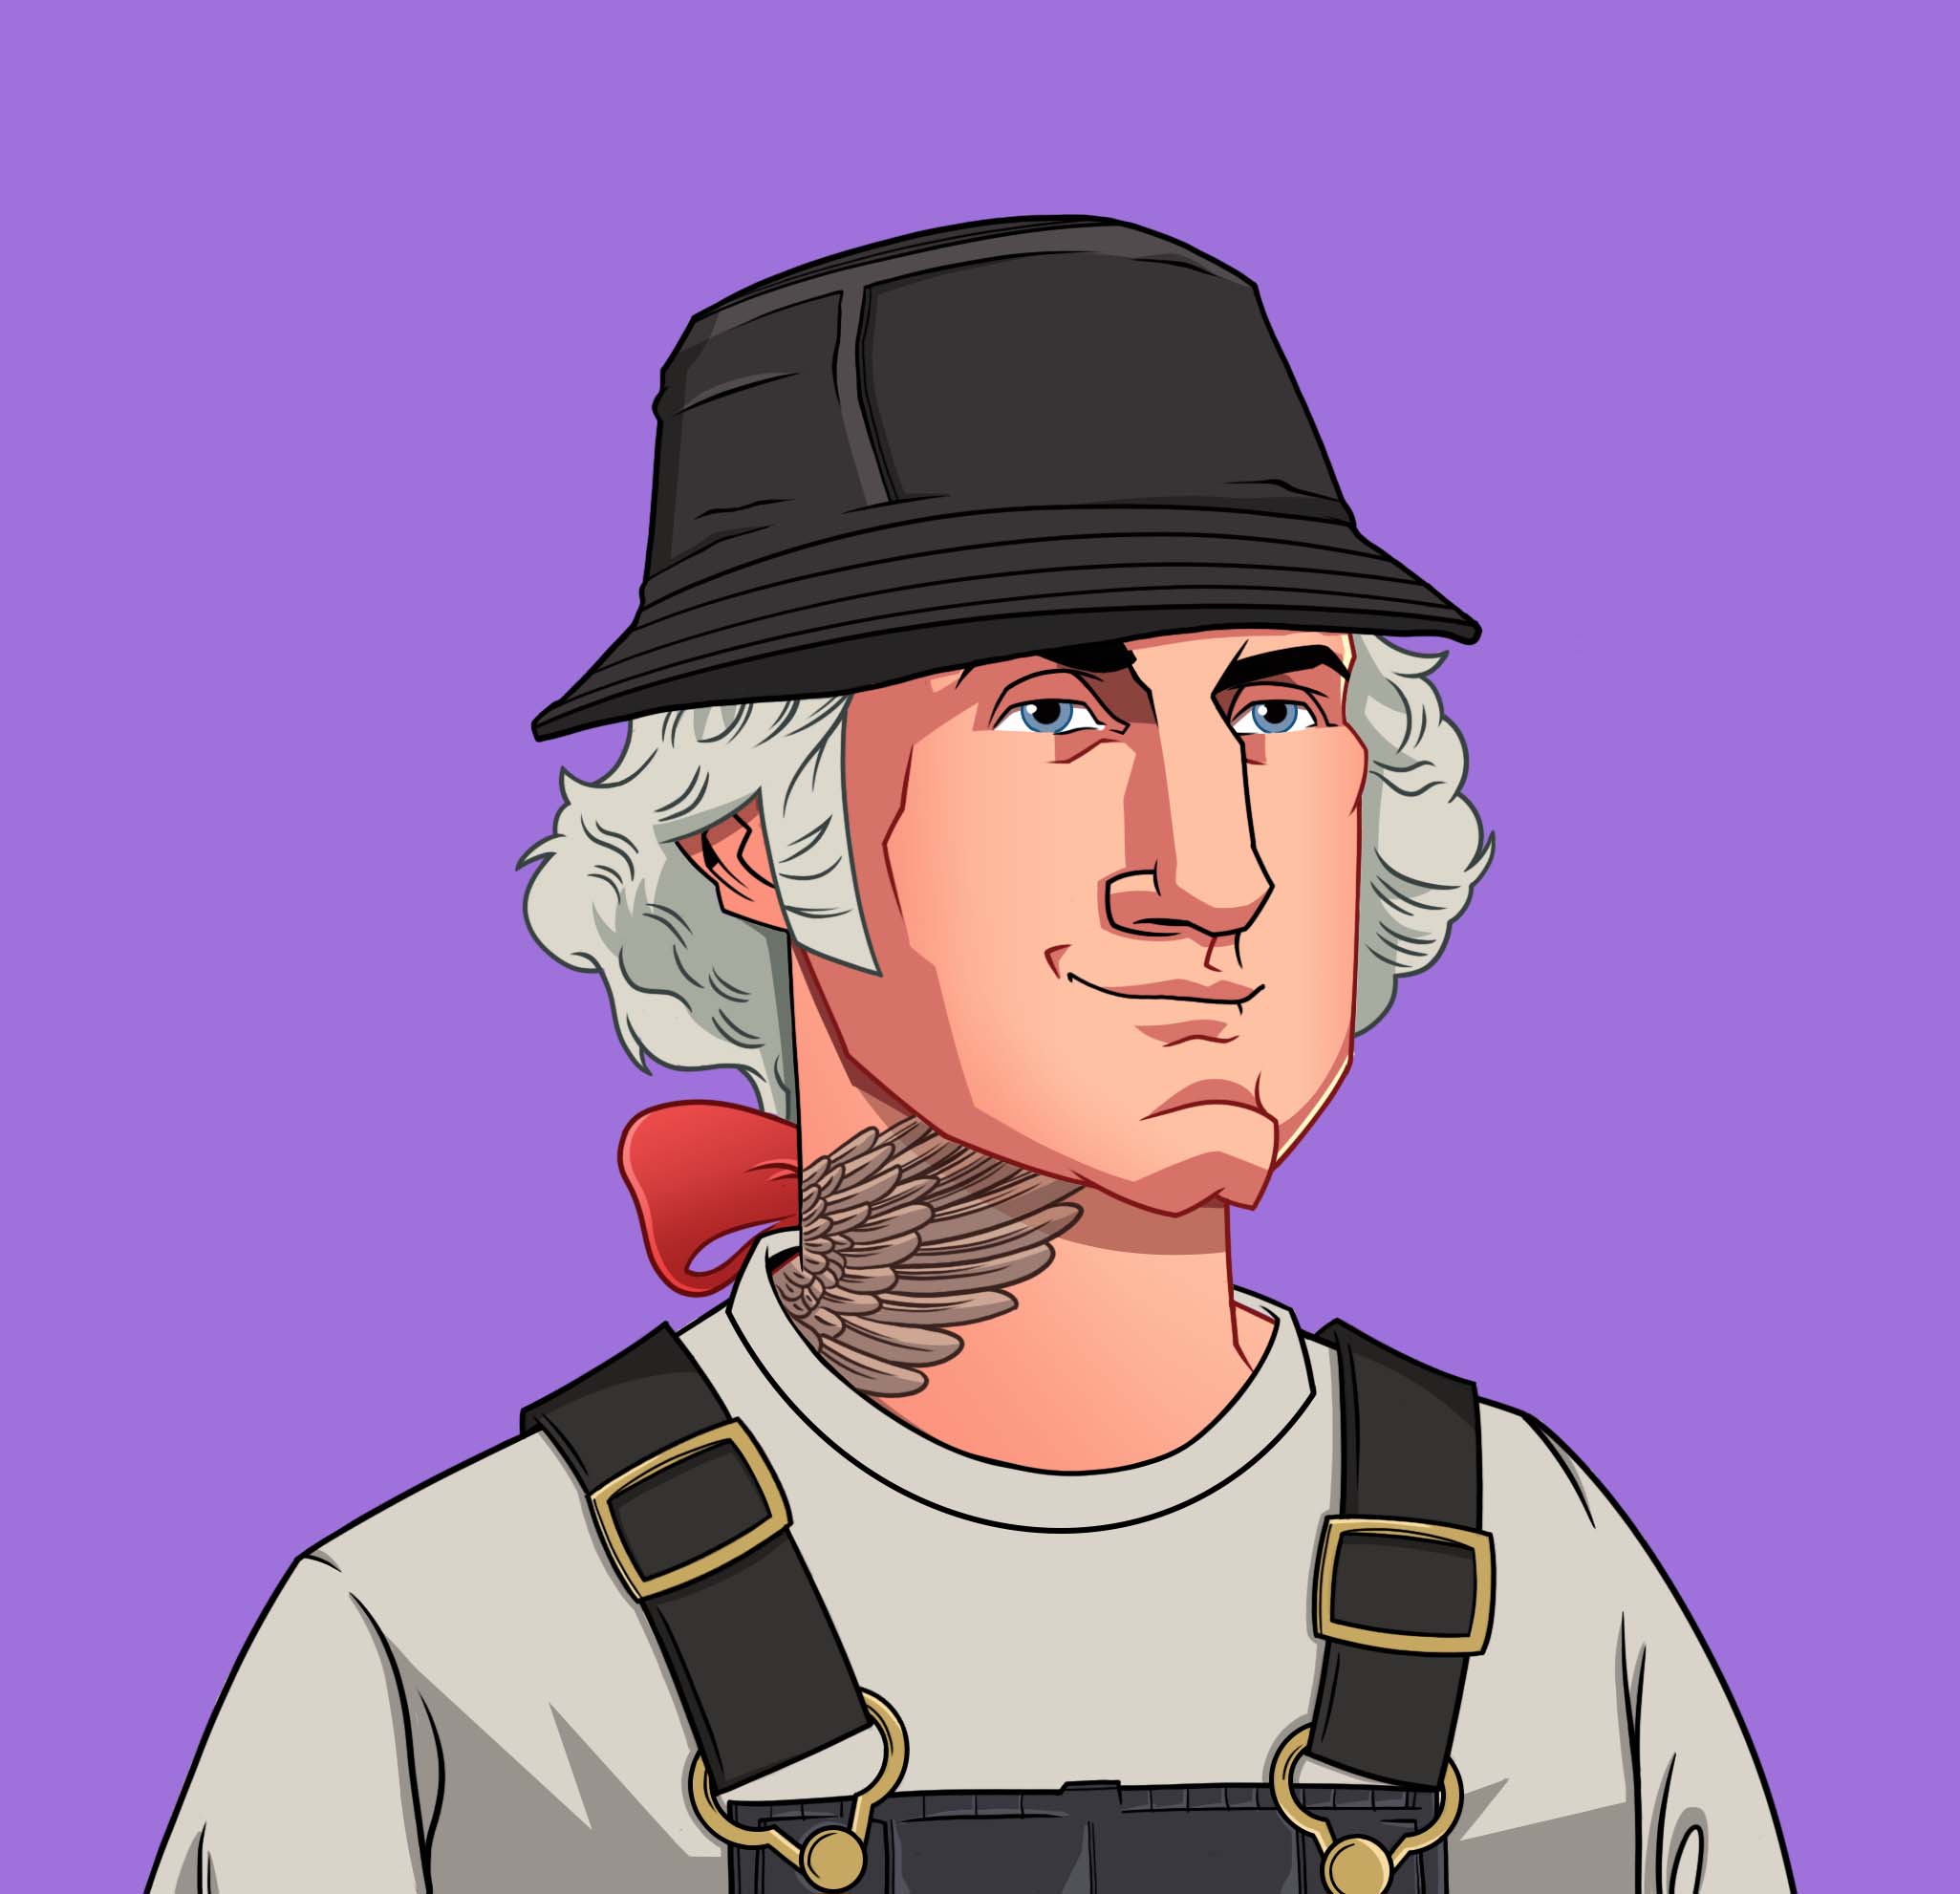 OG George Washington NFT - Tattooed Mechanic with Round Hat Smirk